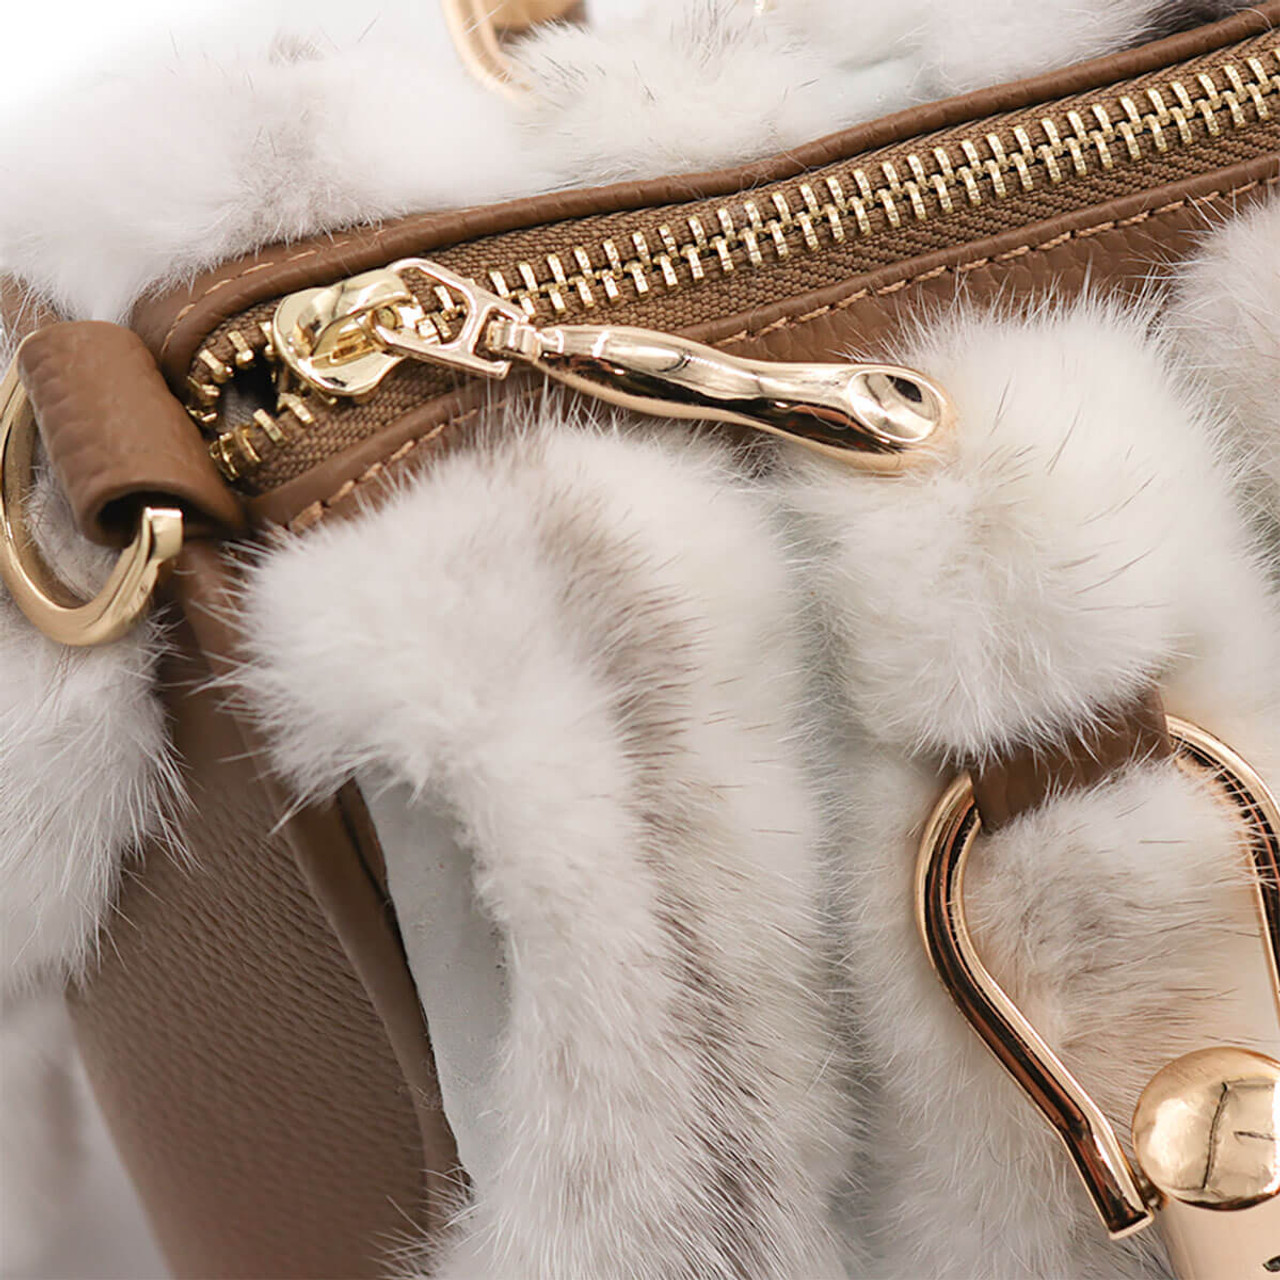 Mink fur handbag / Handbag / Shoulder bag / Small fur bag / Wrist